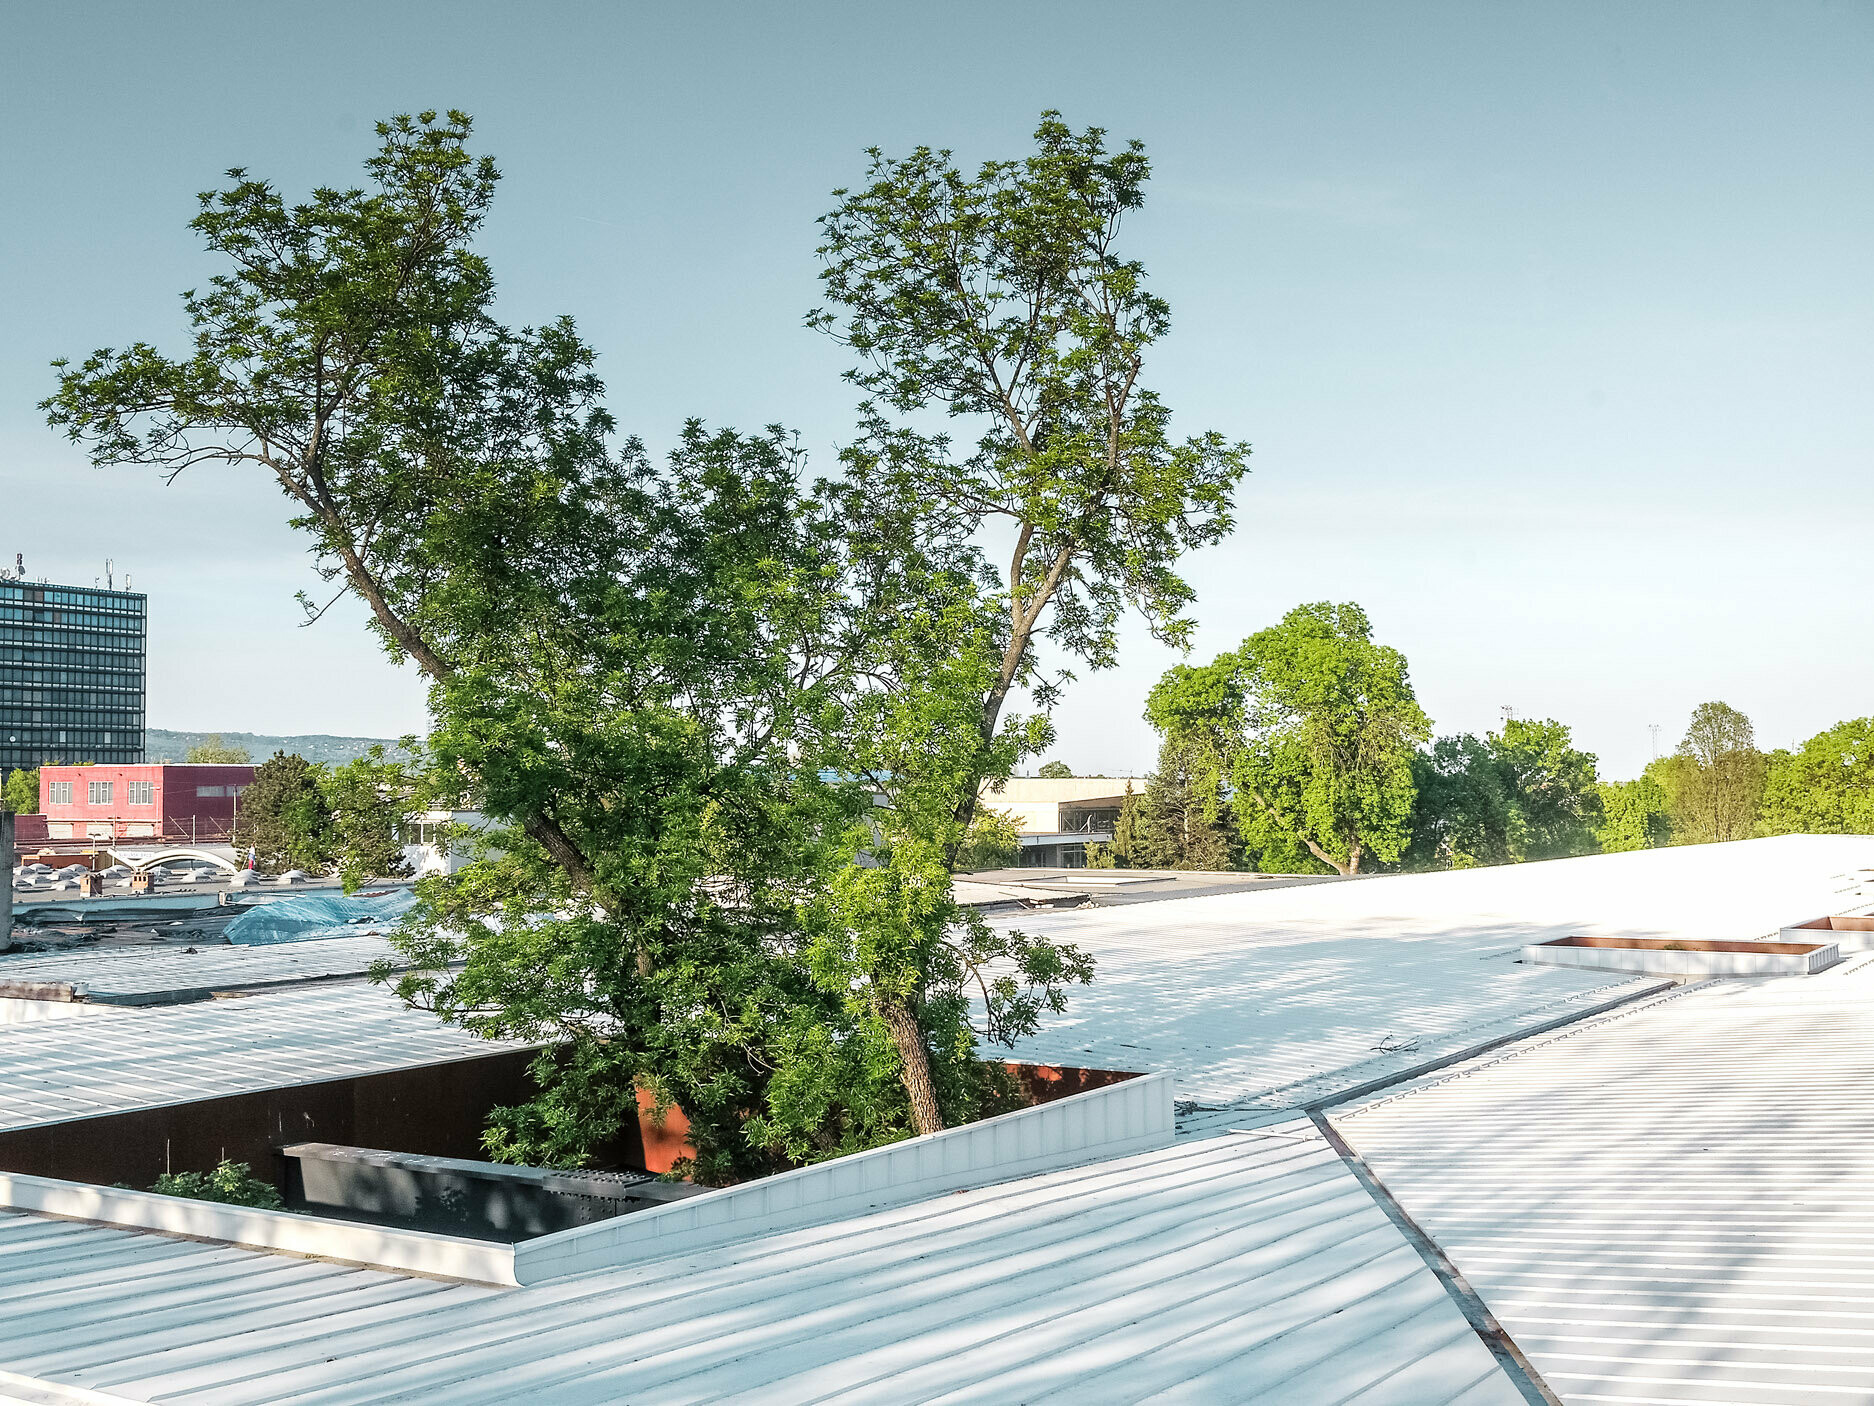 Na obrázku je autobusová zastávka v Chorvátsku s bielou strechou Prefalz od spoločnosti PREFA. Veľké stromy prerážajú strechu na viacerých miestach, čím stavbe dodávajú osobitý architektonický prvok. V pozadí je vidieť ďalšie budovy a vysokú kancelársku vežu. Obrázok zdôrazňuje kombináciu funkčnej architektúry a prírodného prostredia, pričom biela strecha a zeleň stromov vytvárajú výrazný kontrast.